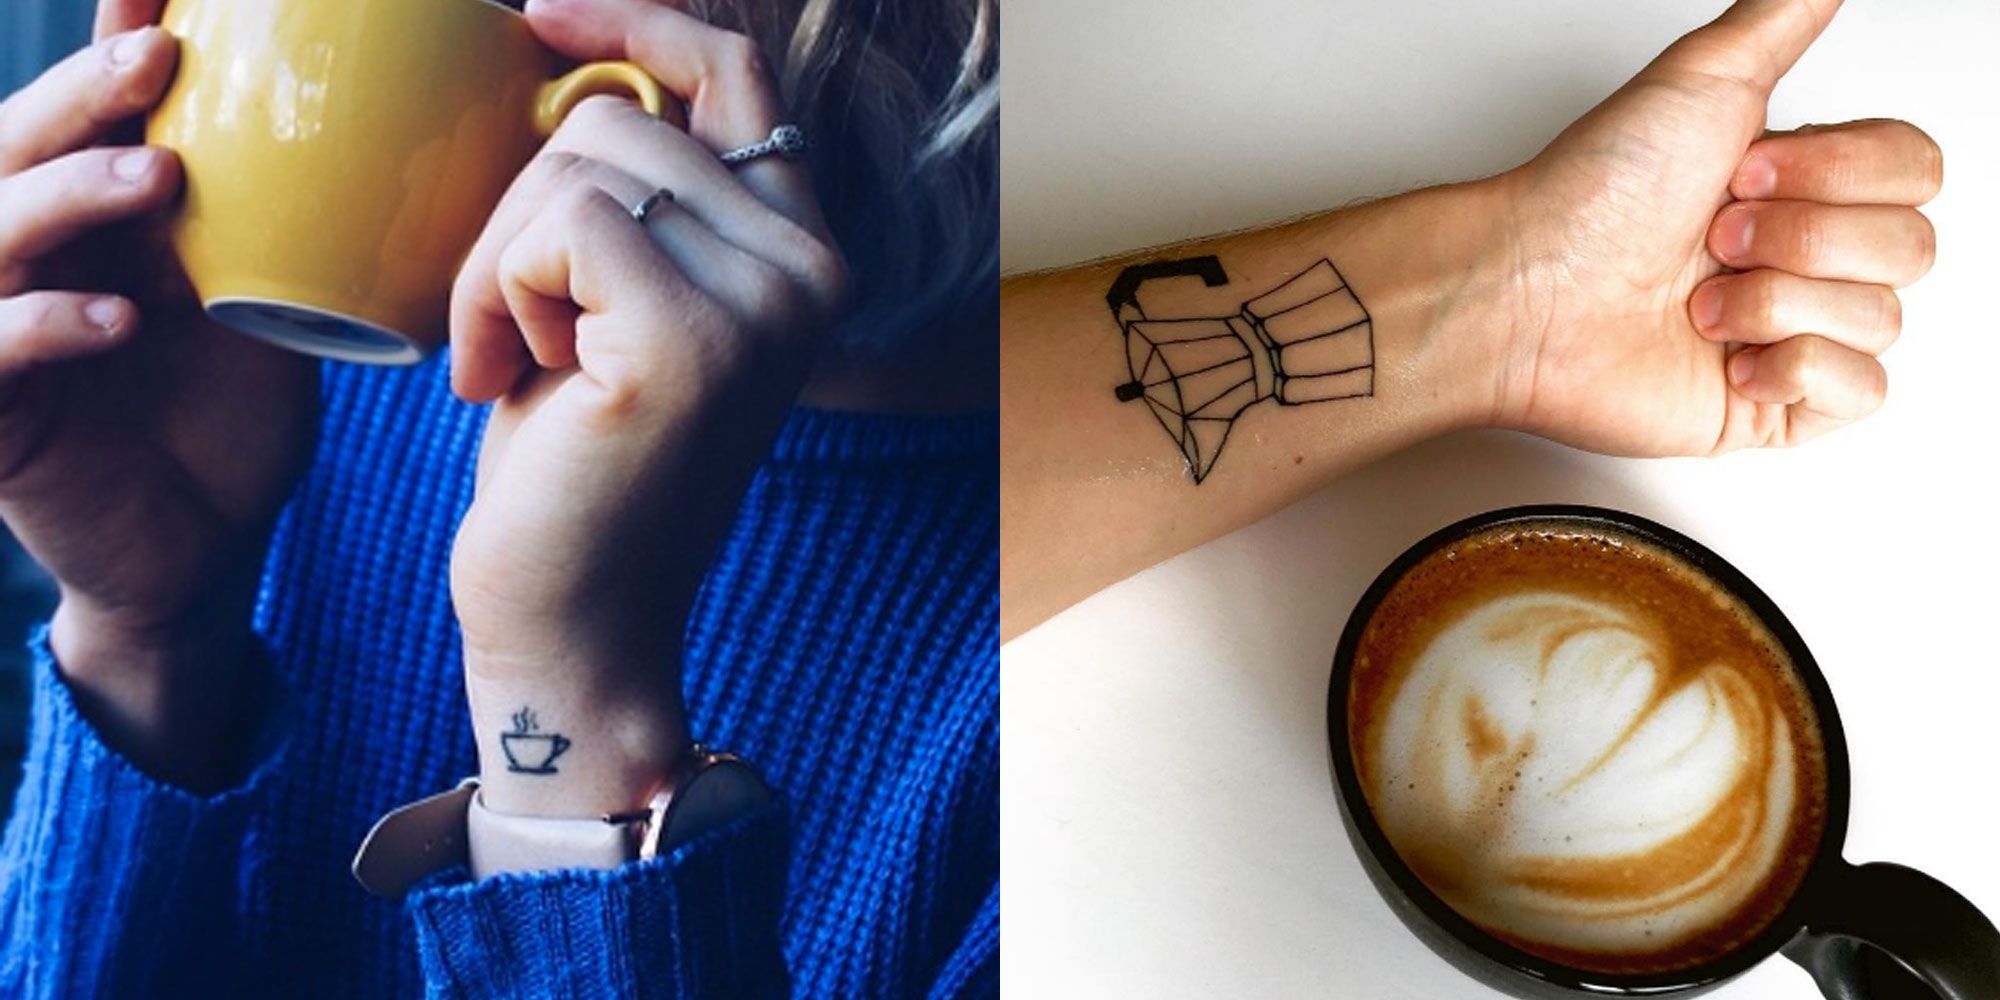 Coffee Tattoo Ideas - Tiny Coffee Tattoo Ideas